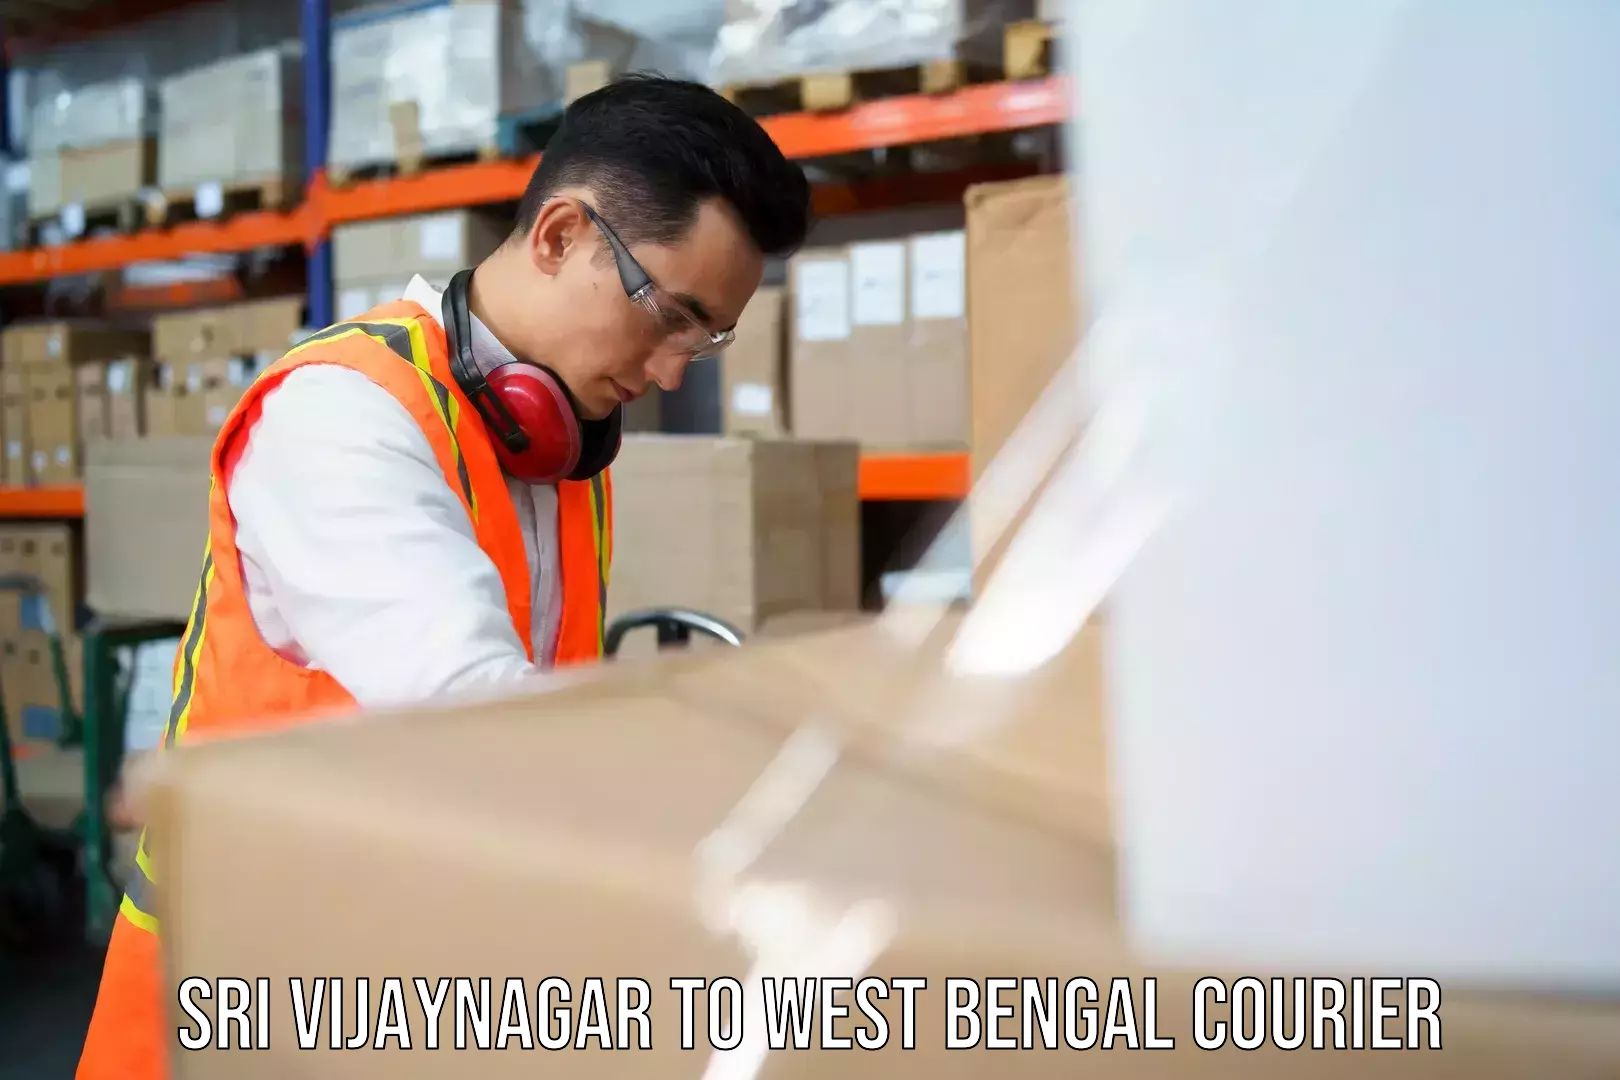 Express courier facilities Sri Vijaynagar to West Bengal